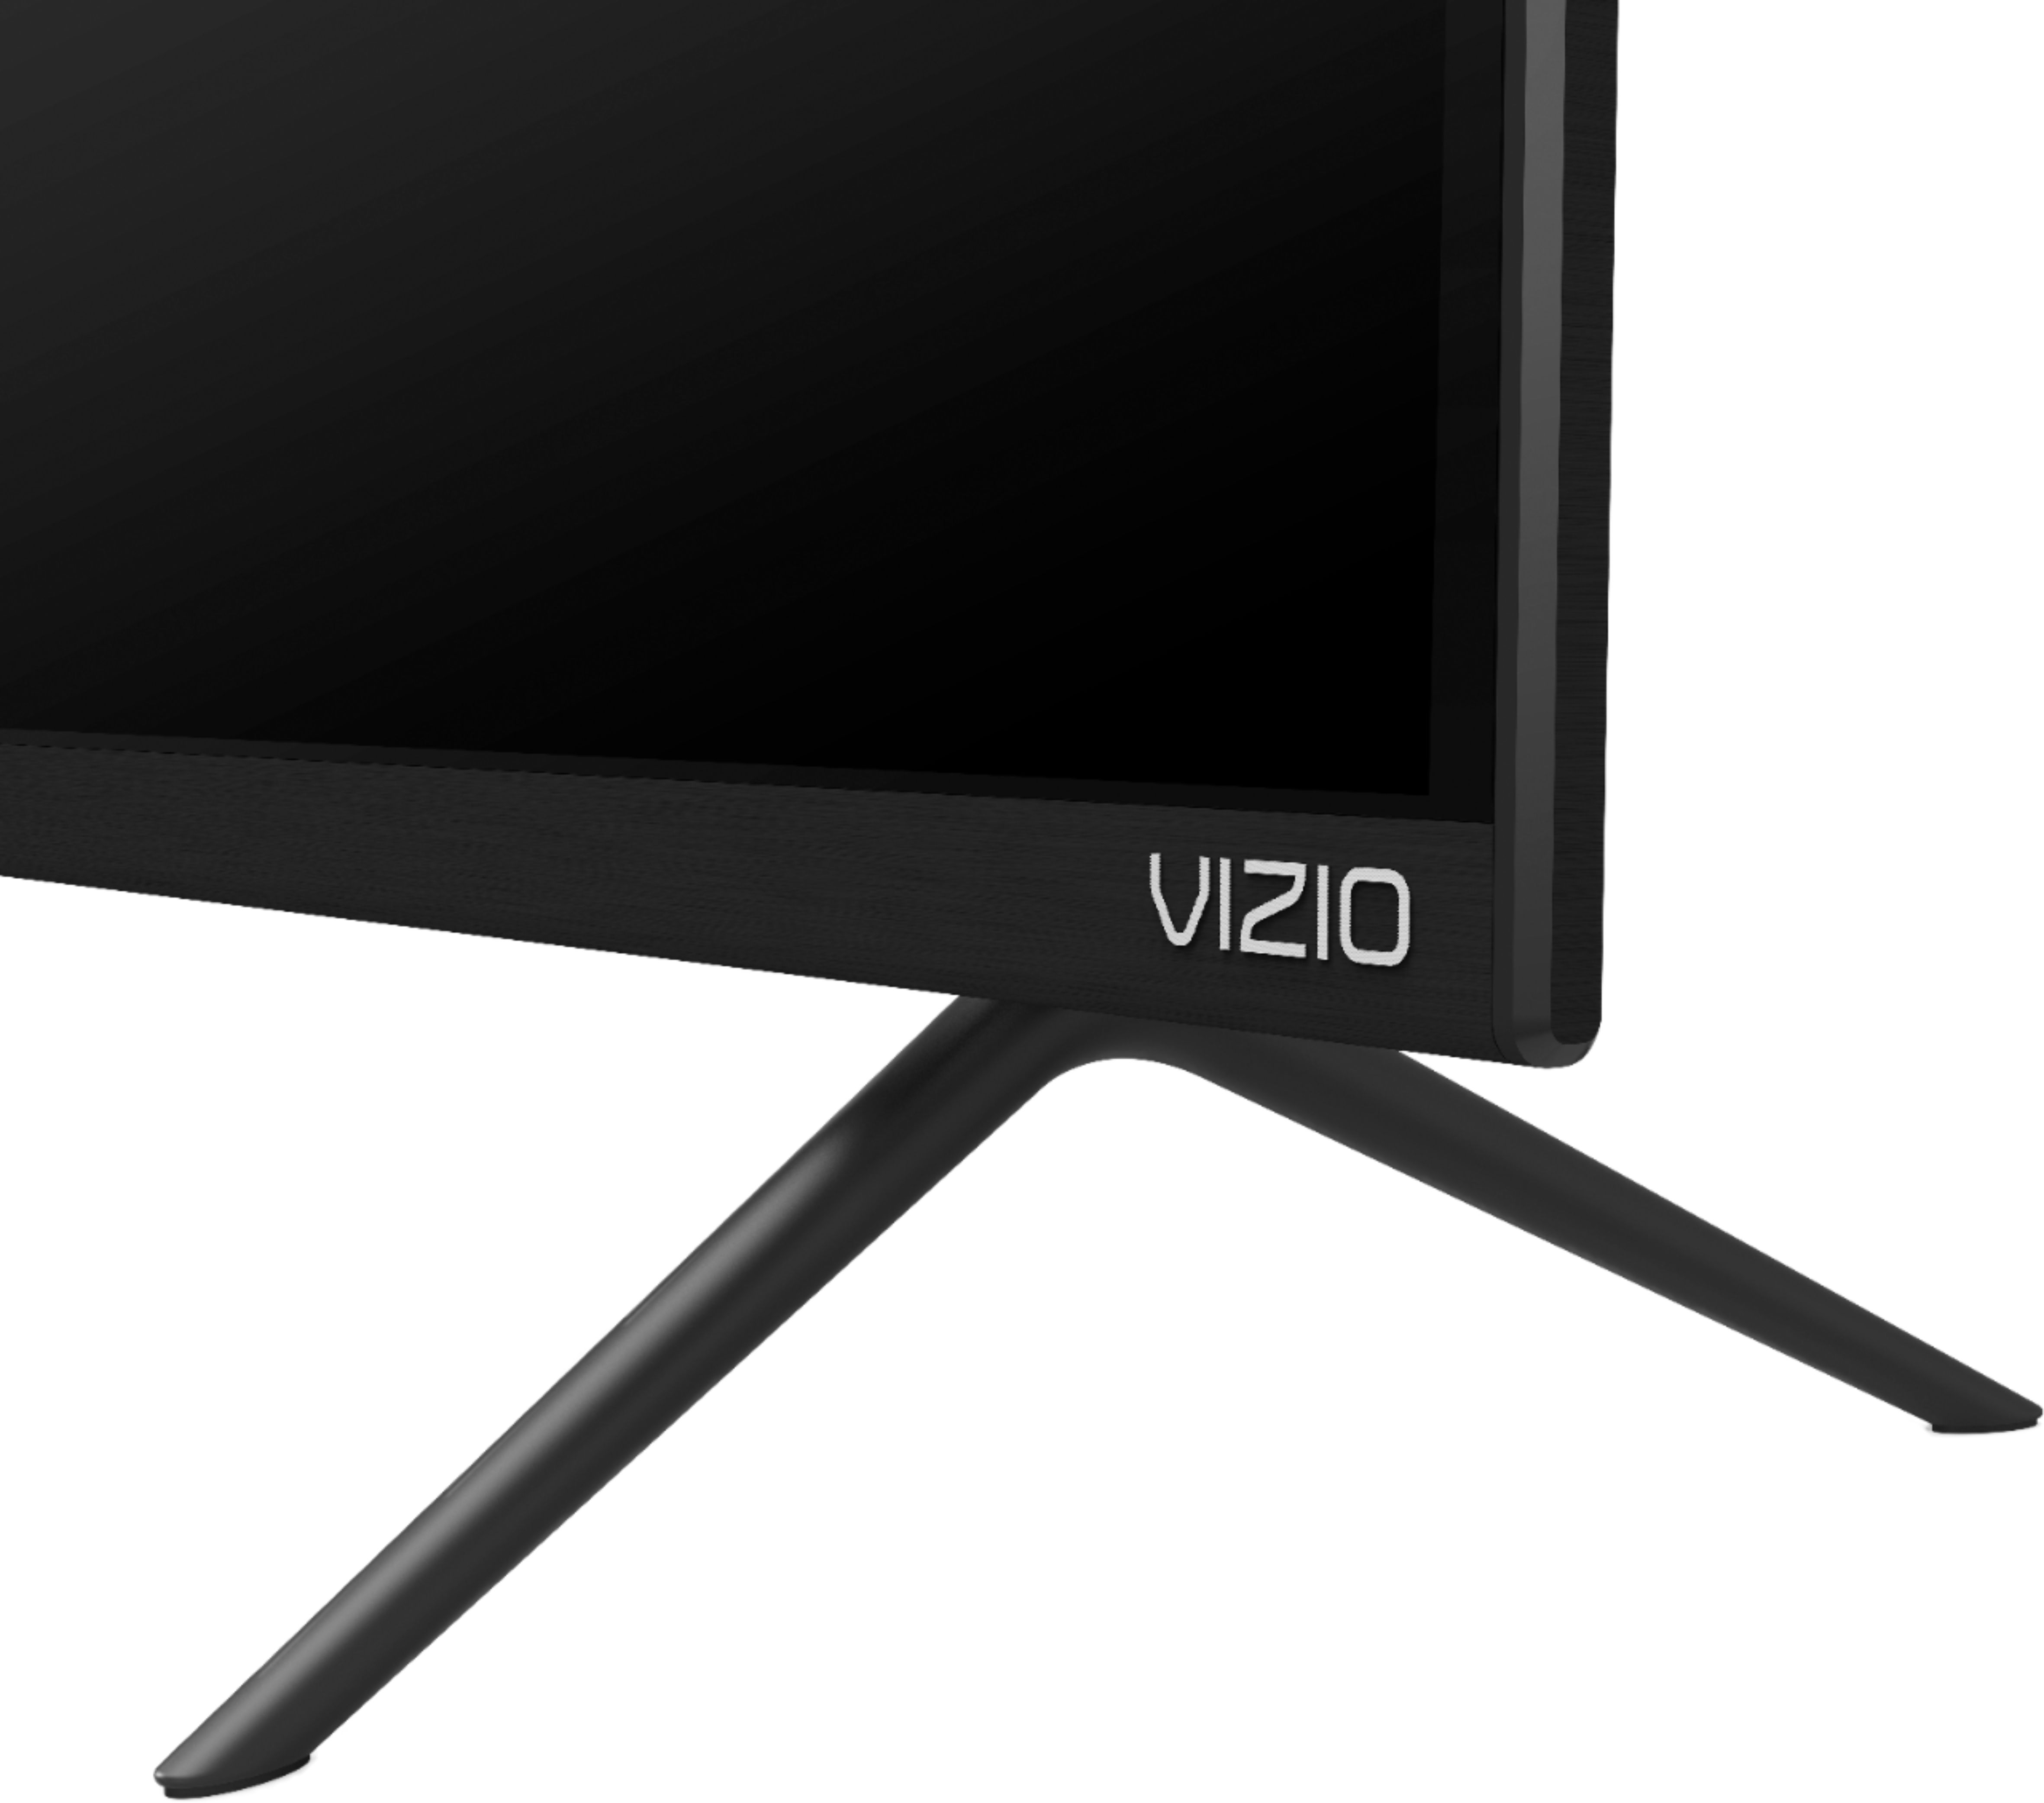 VIZIO D-Series™ 32” Class (31.5 Diag.) Smart TV, D32h-G9